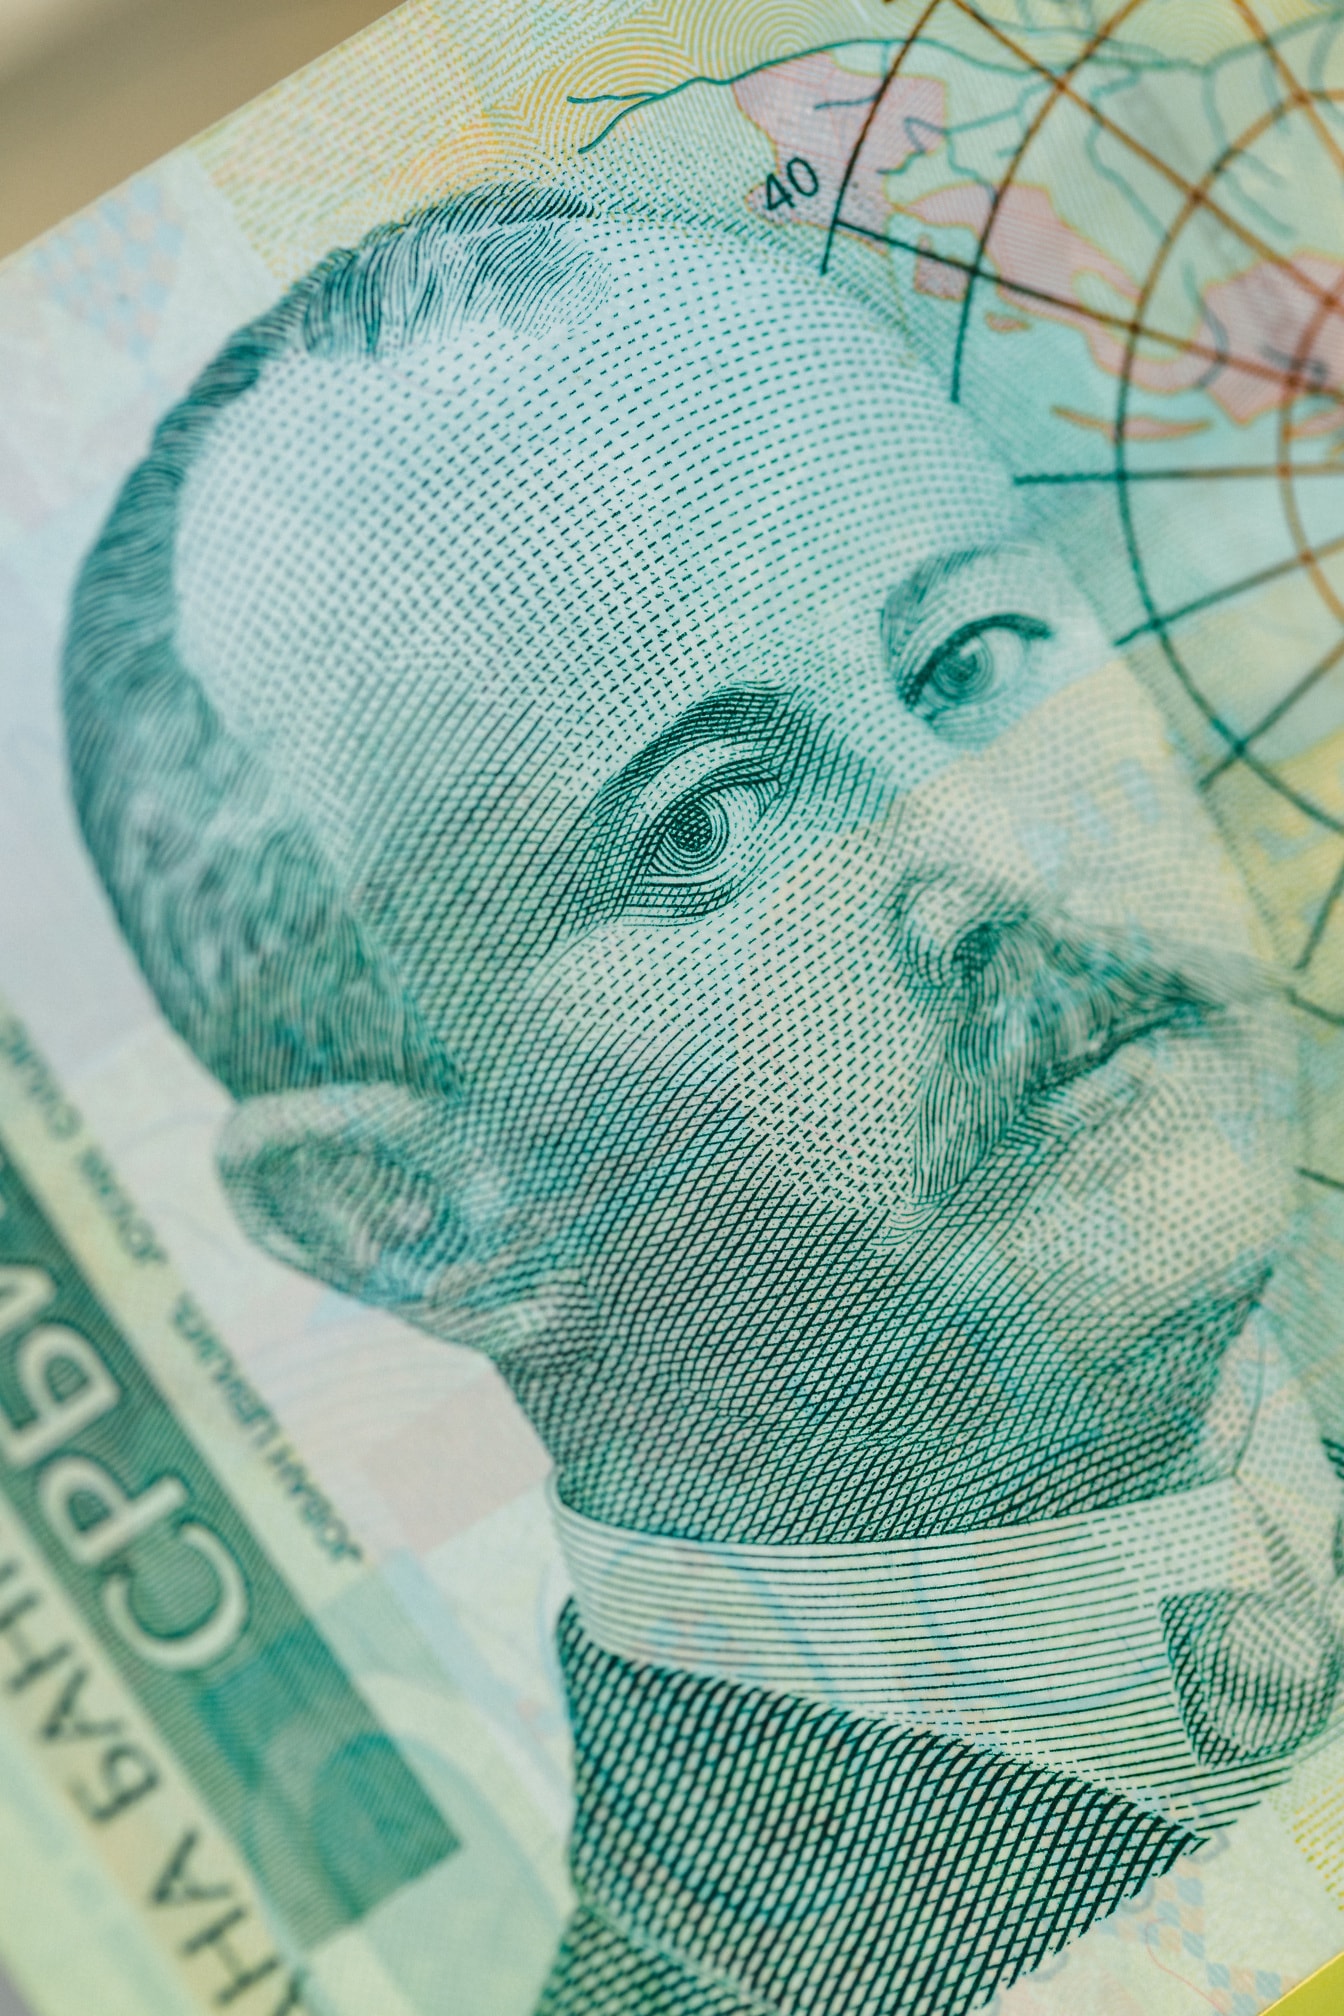 Close-up van Servisch dinar bankbiljet met portret van Jovana Cvijic